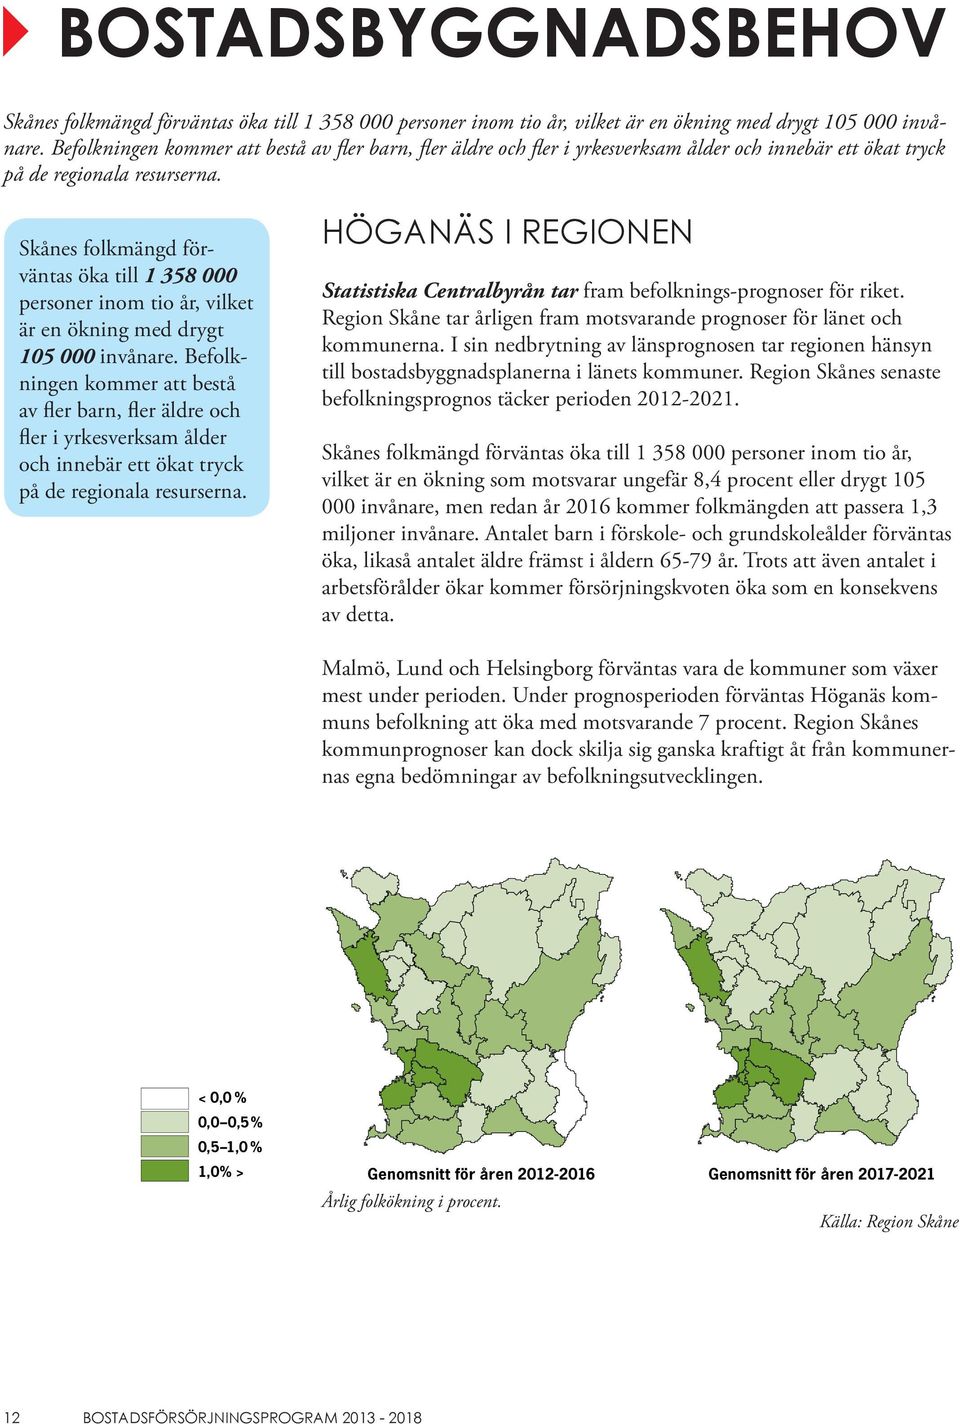 Skånes folkmängd förväntas öka till 1 358 000 personer inom tio år, vilket är en ökning med drygt 105 000 invånare.